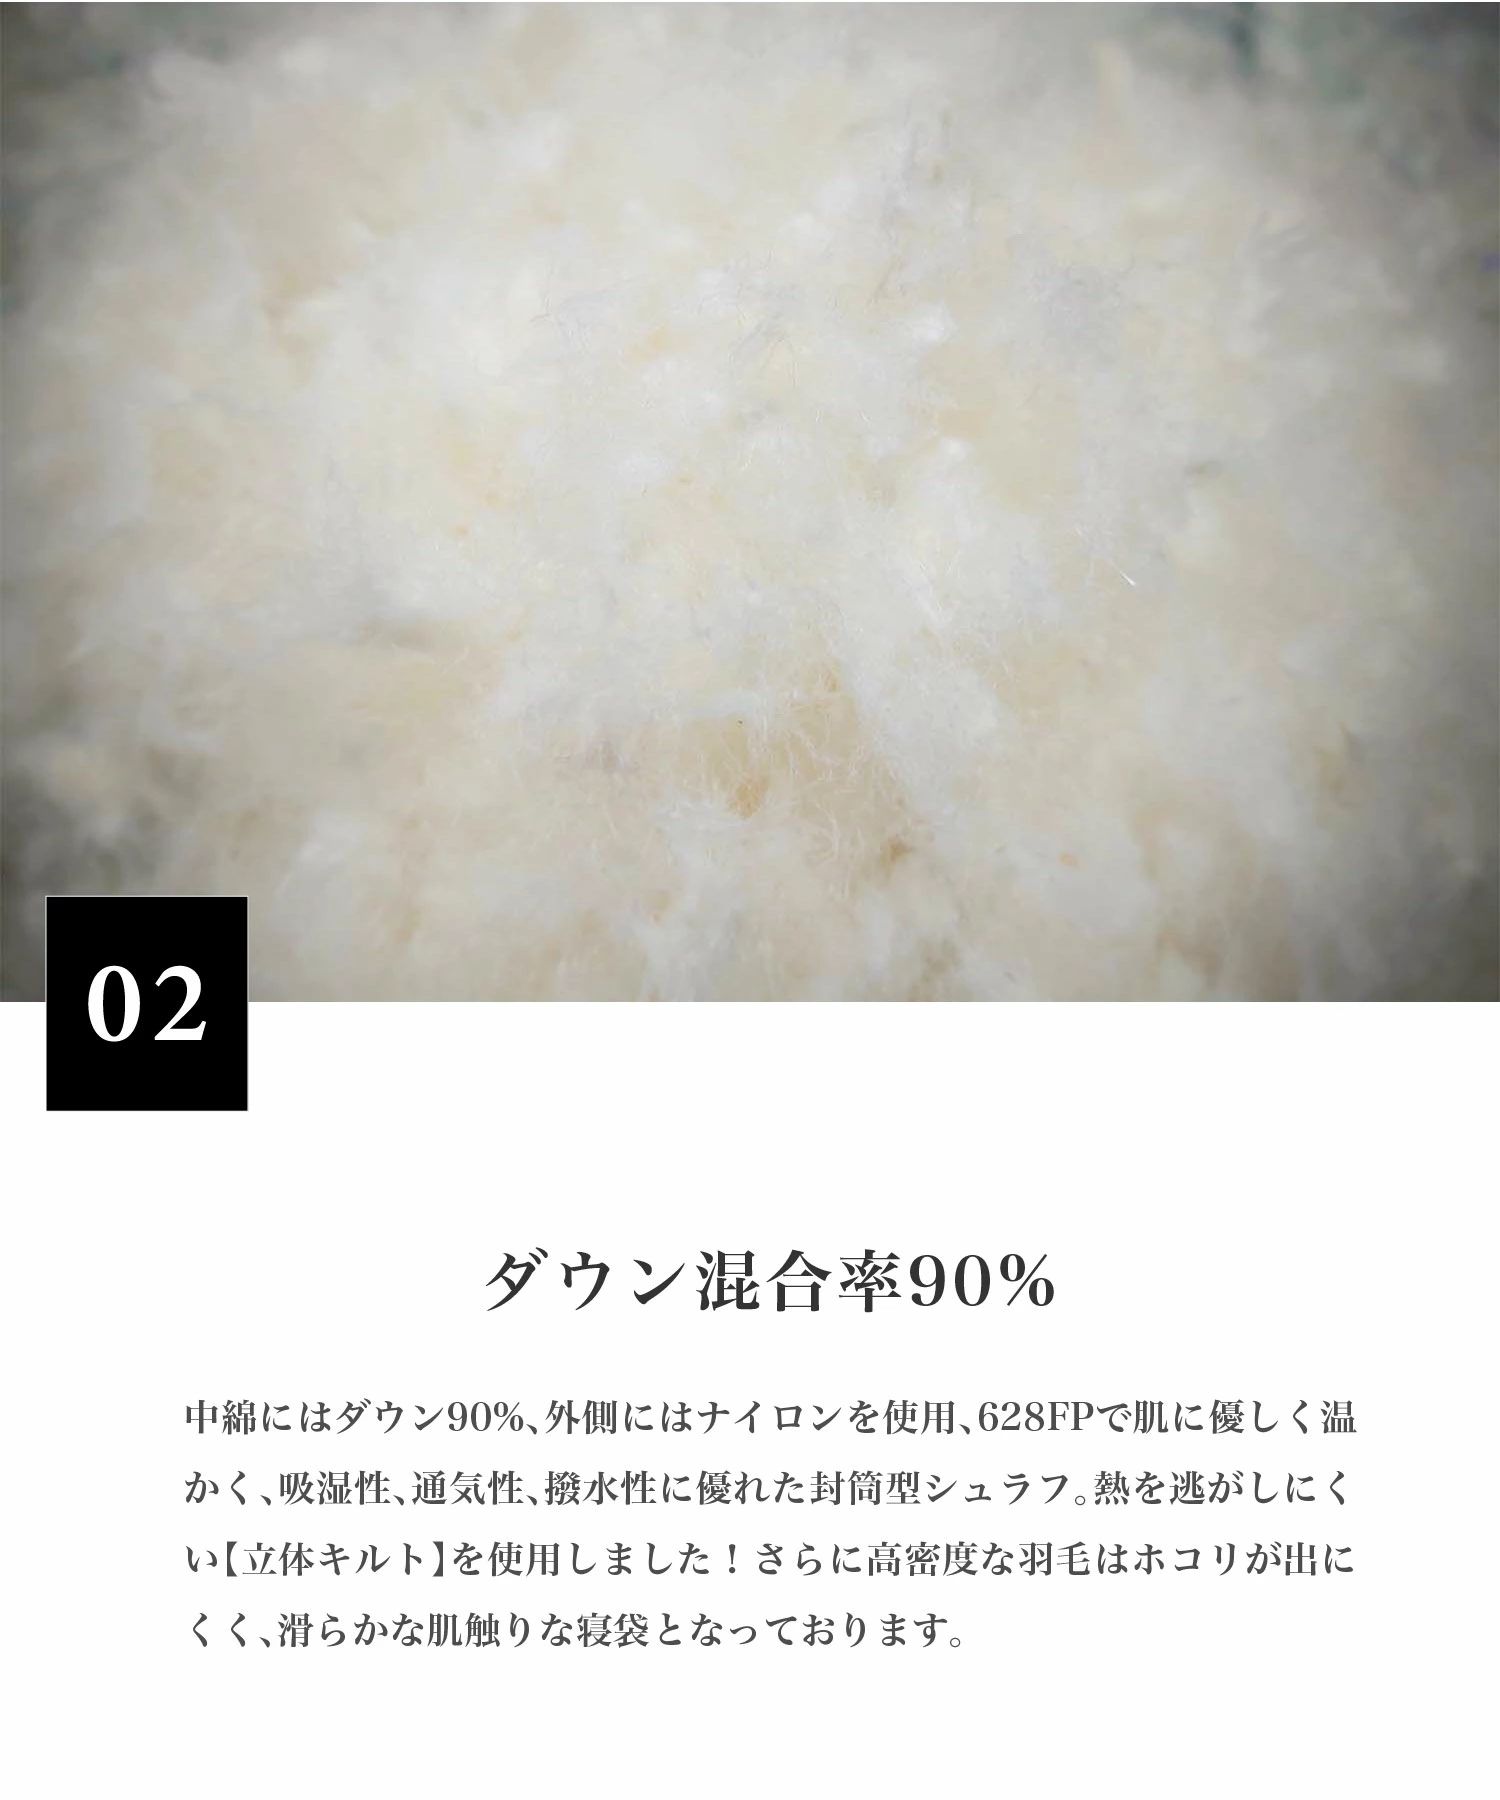 最新情報 21 東京 素材辞典Vol.45 写真素材 写真素材